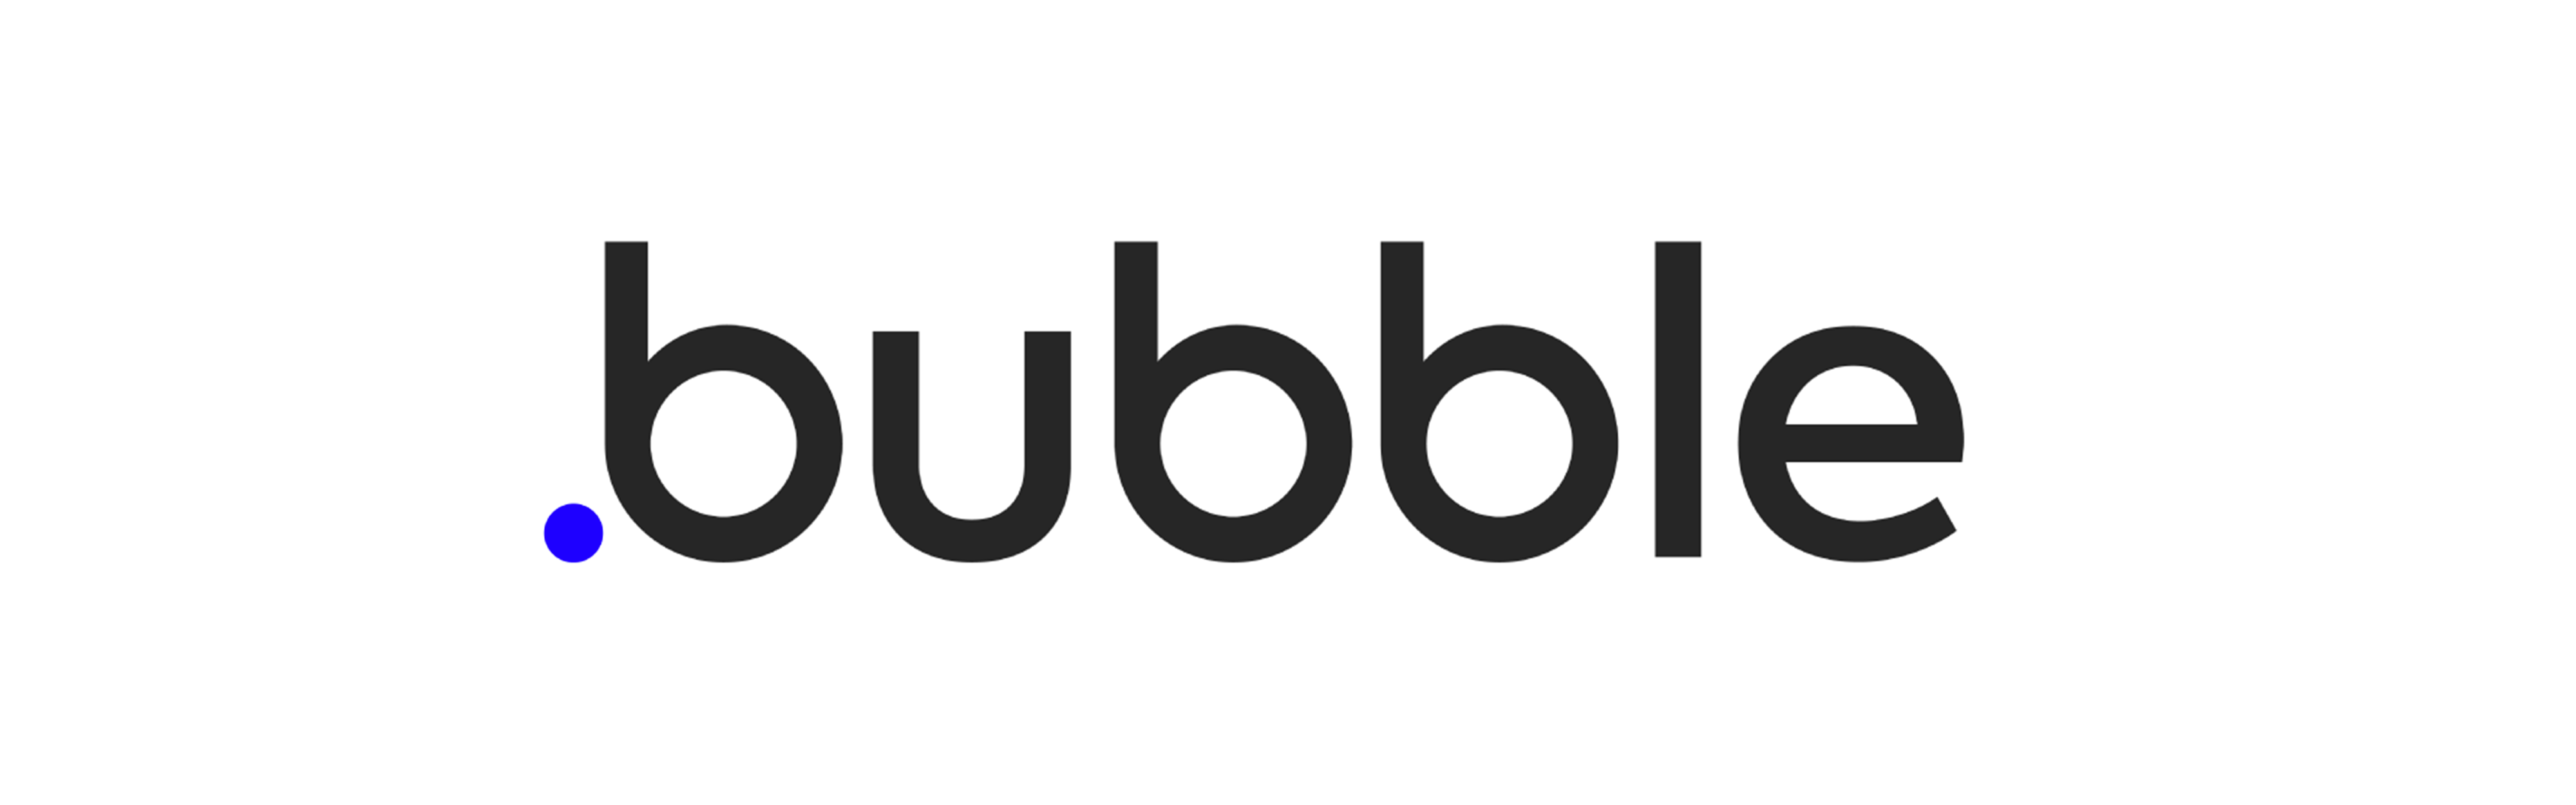 bubble logo main